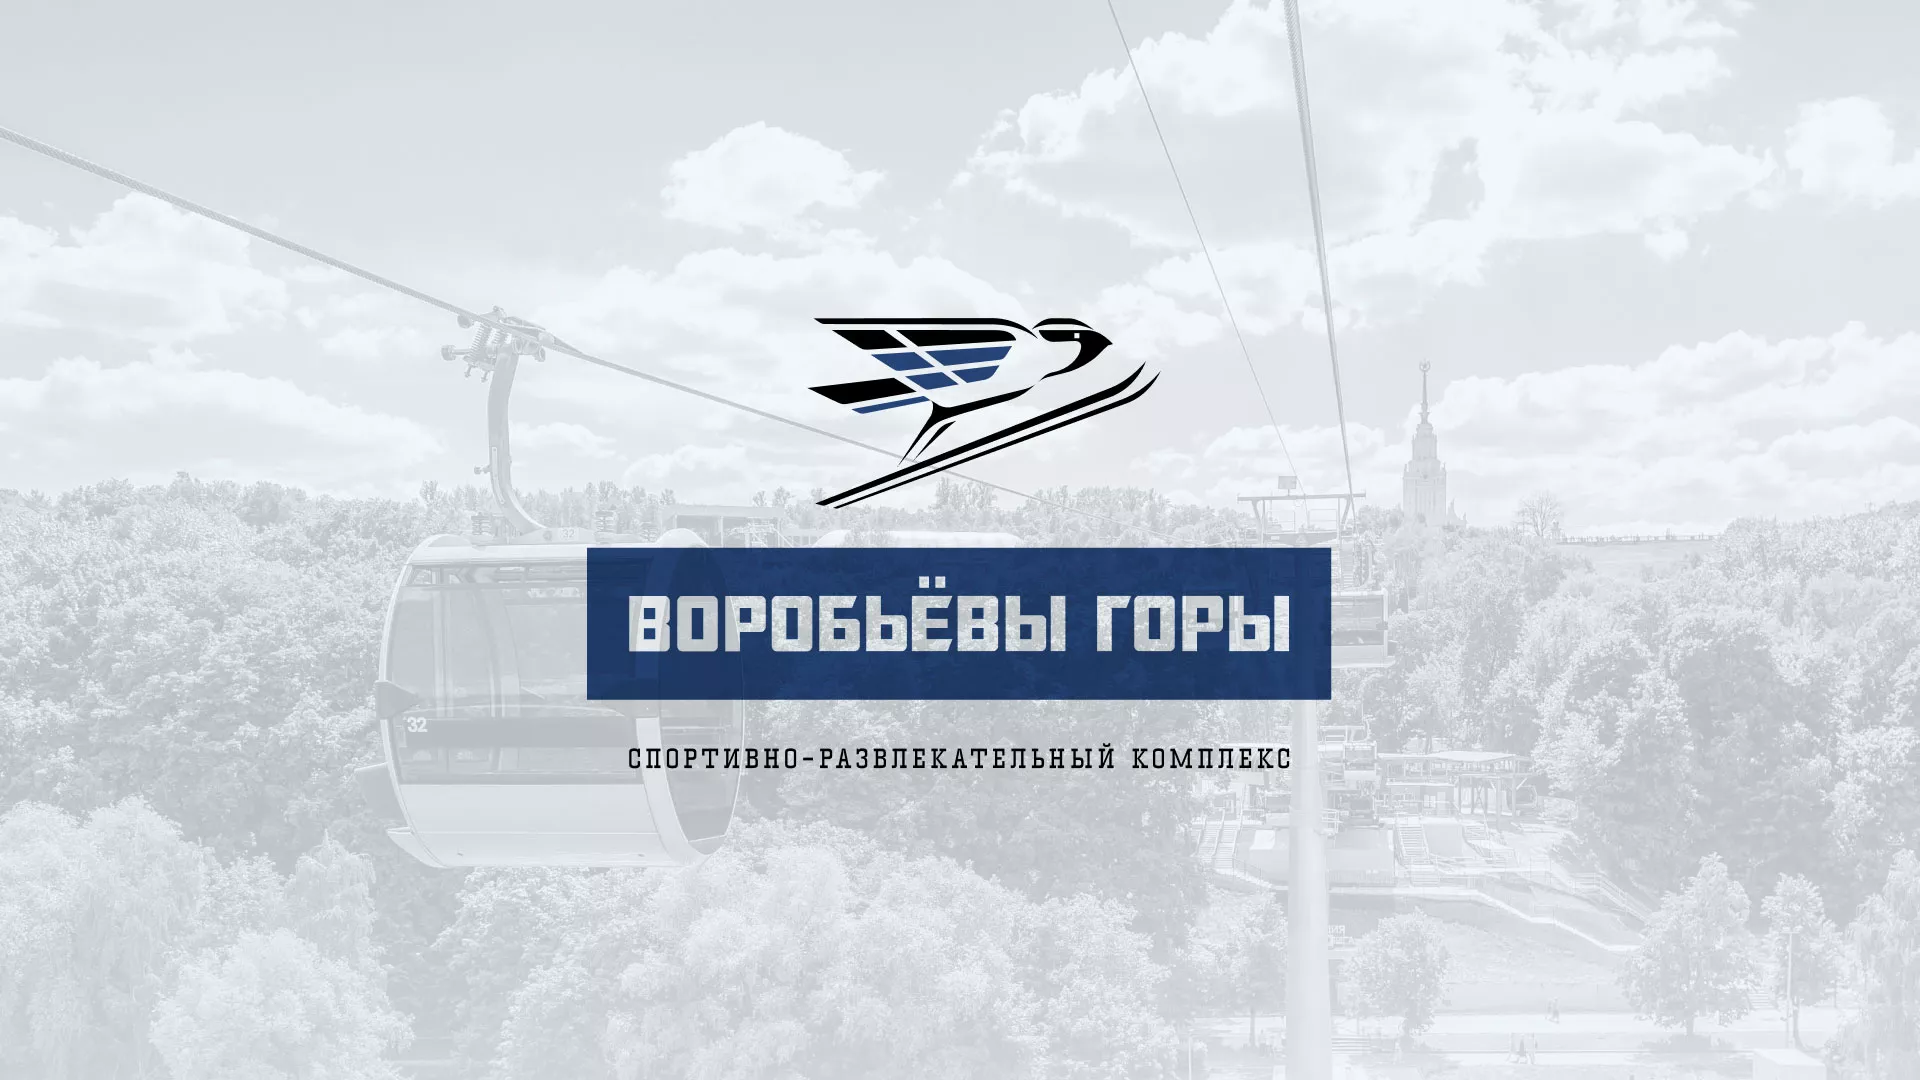 Разработка сайта в Саяногорске для спортивно-развлекательного комплекса «Воробьёвы горы»